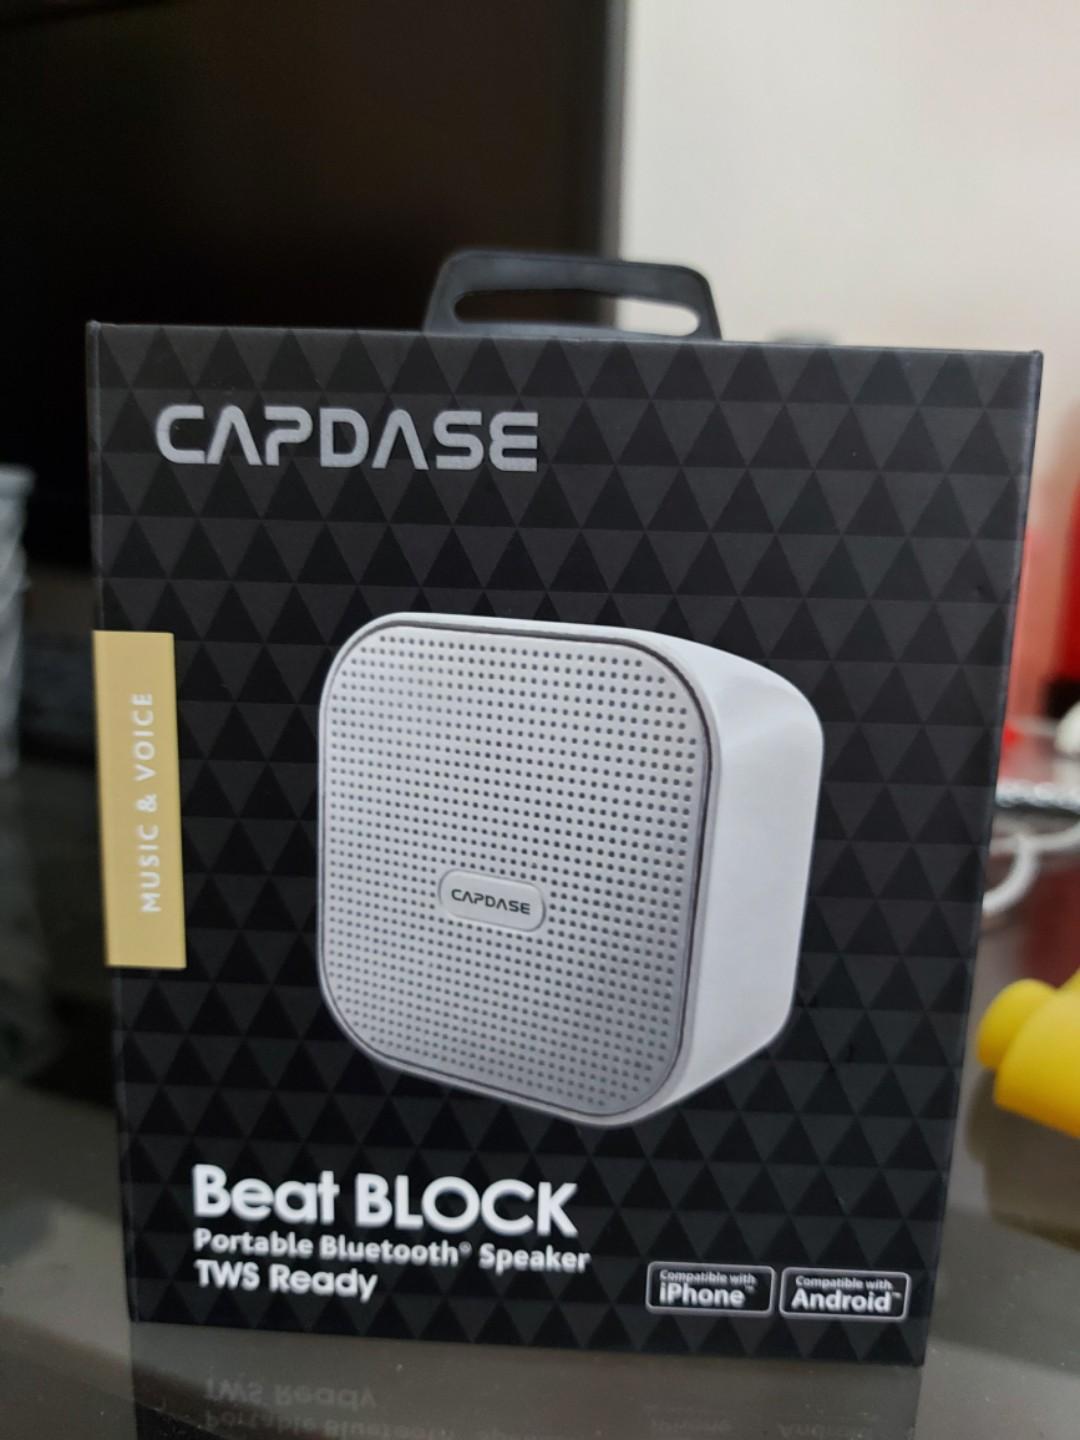 capdase beat block price